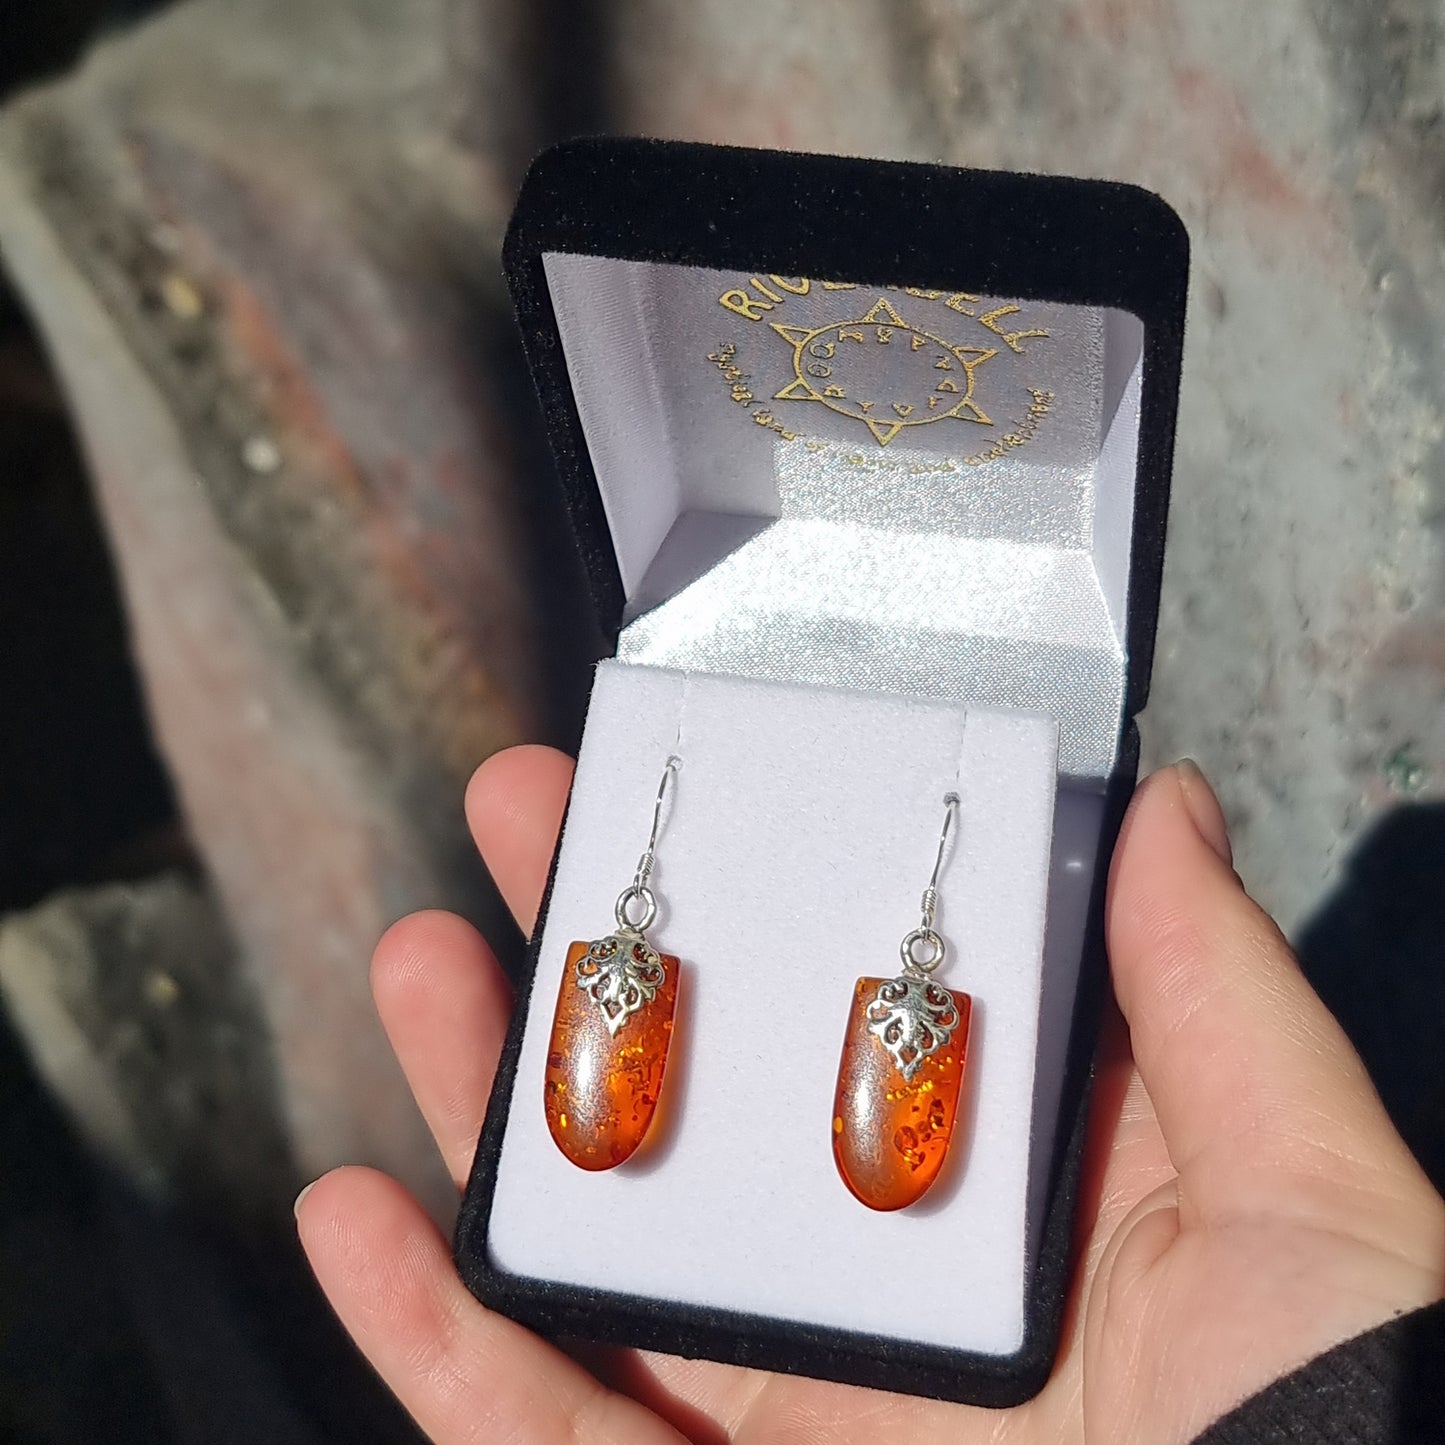 Amber earrings - Rivendell Shop